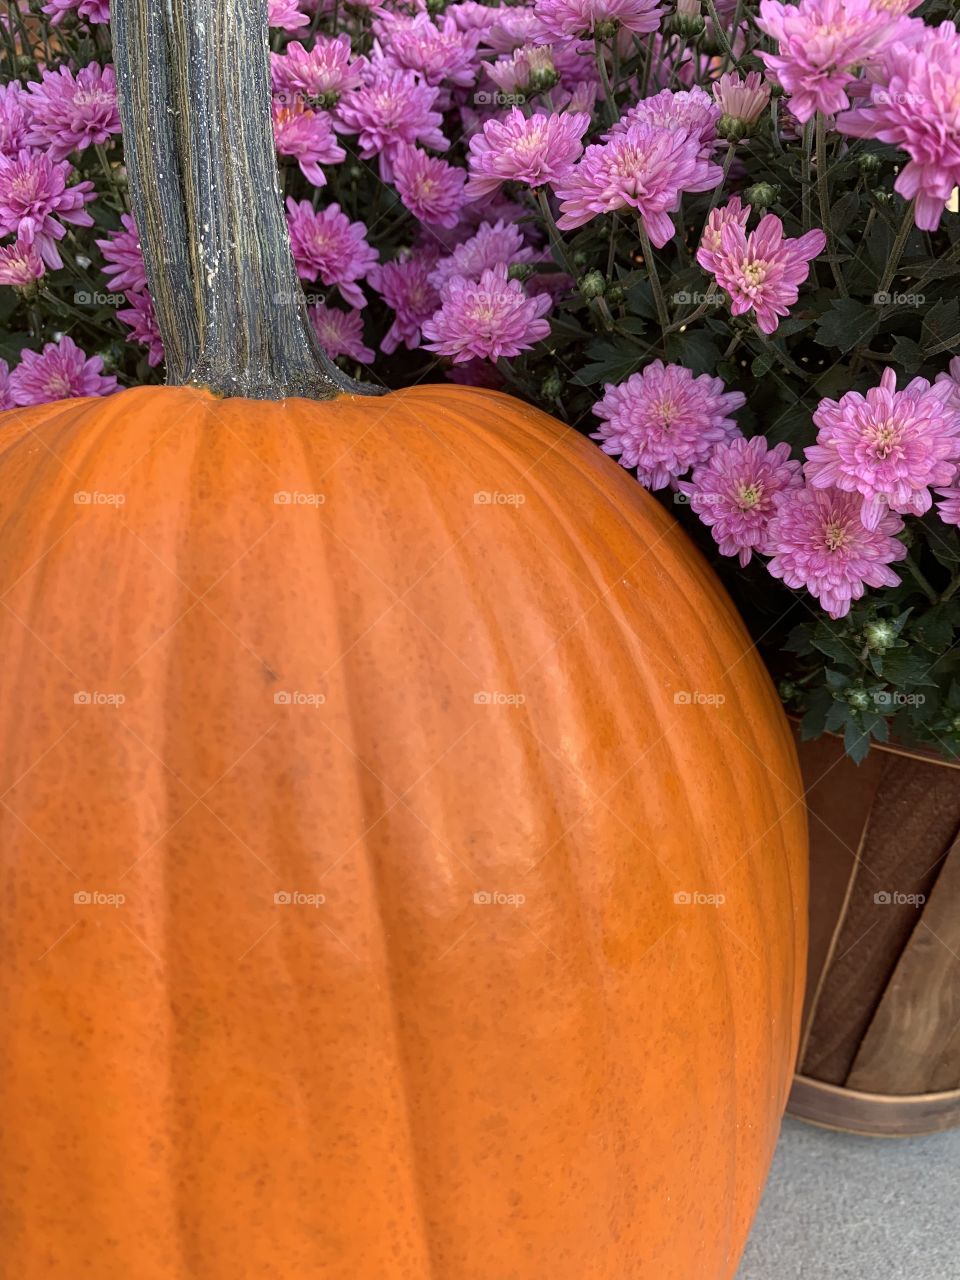 It’s a pumpkin season!